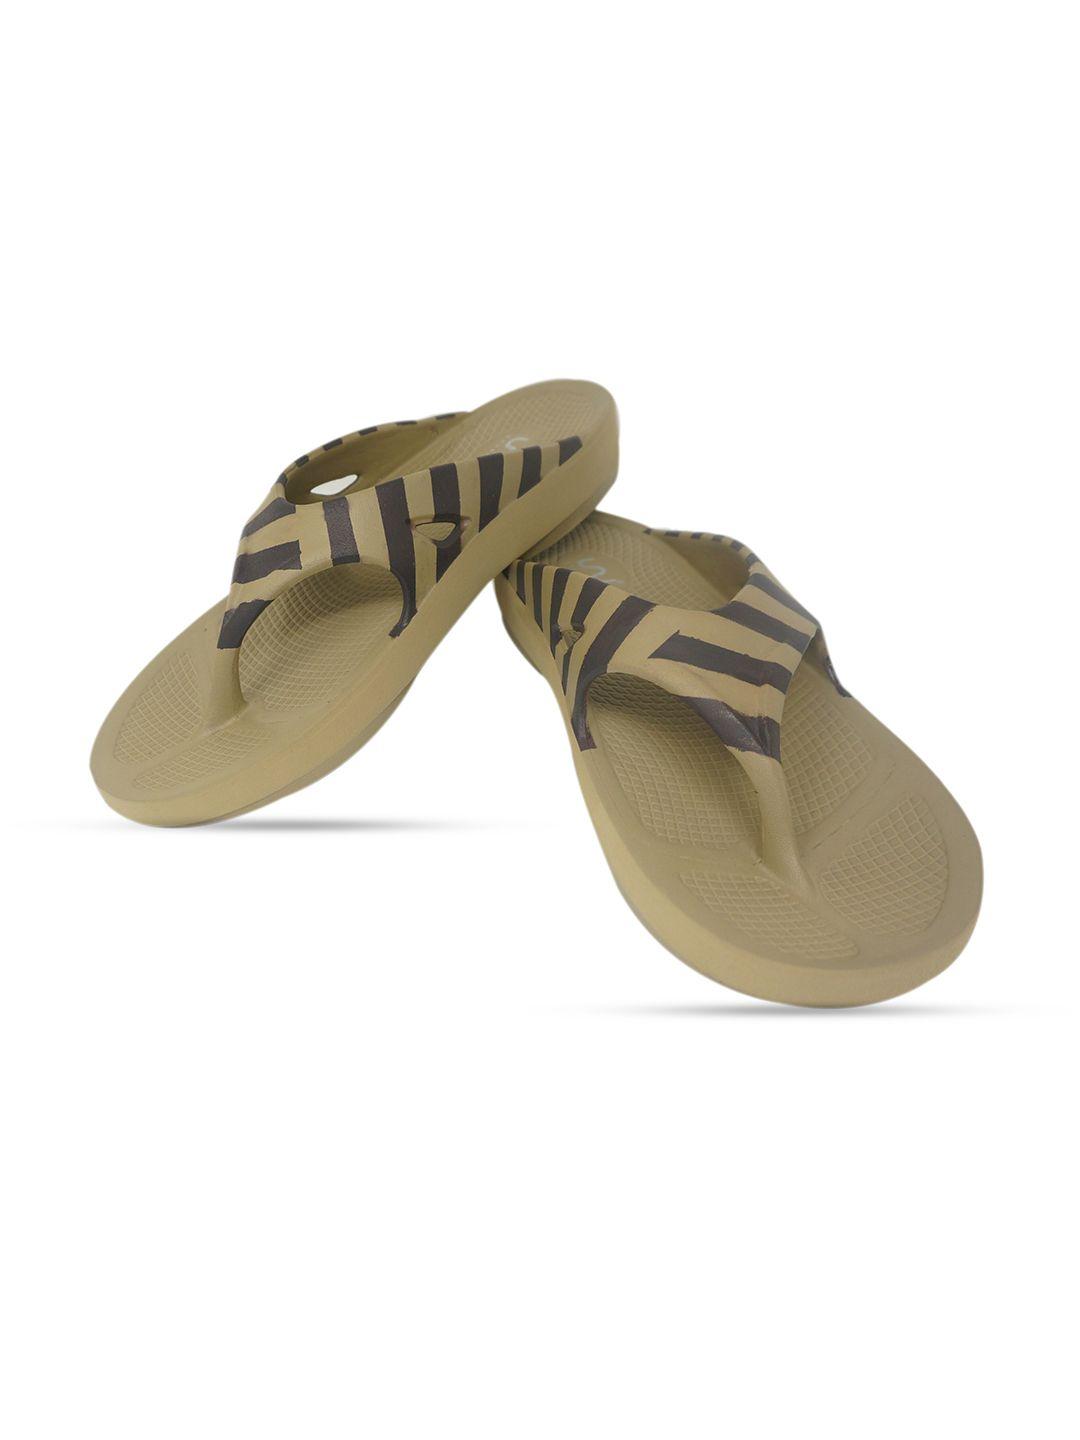 doubleu-men-khaki-&-brown-striped-rubber-thong-flip-flops